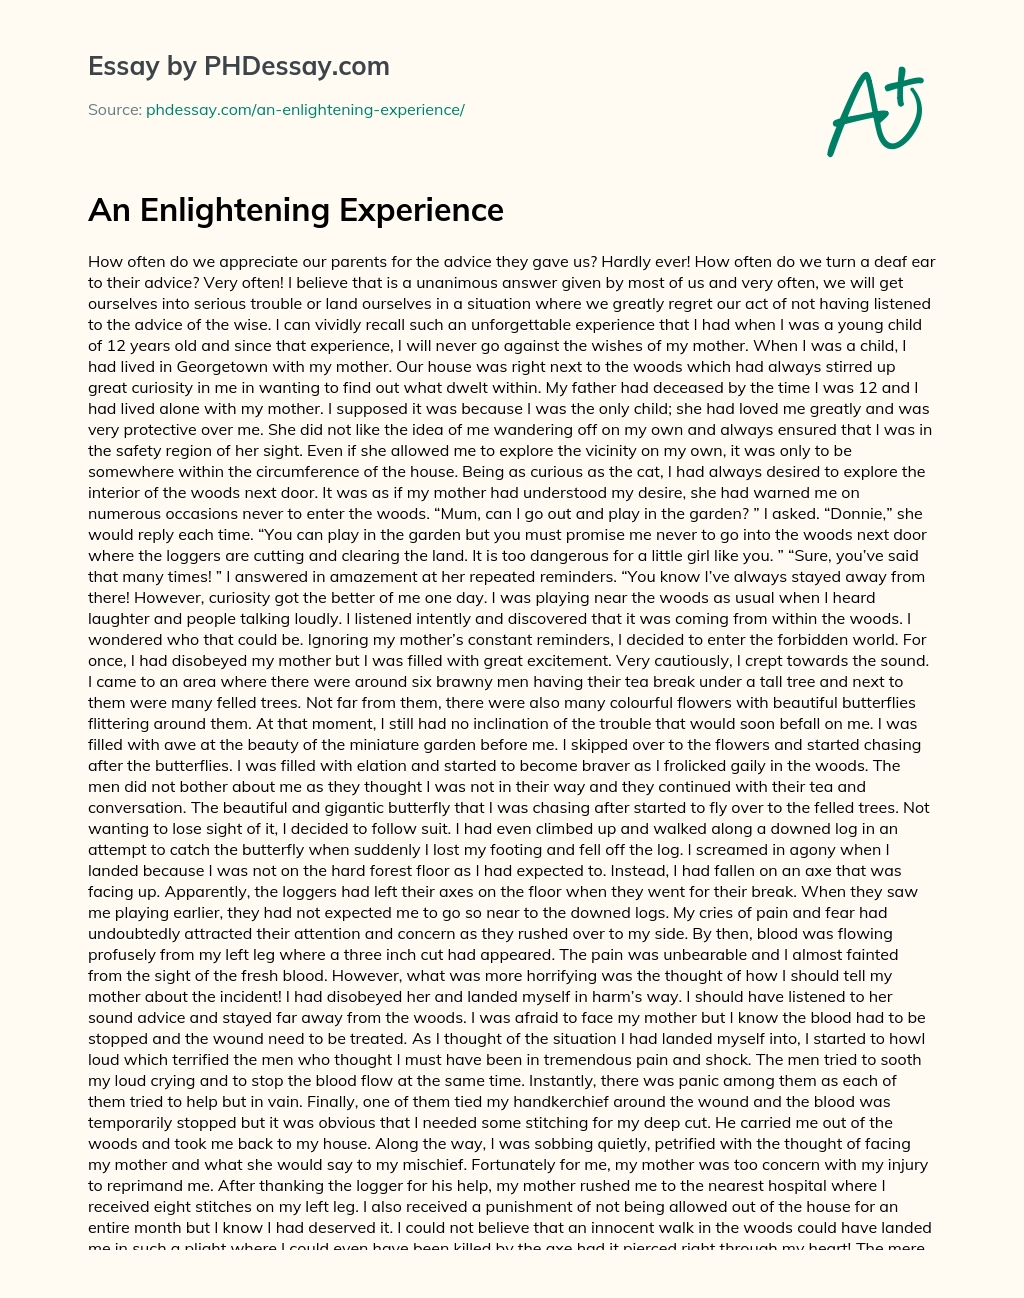 An Enlightening Experience essay